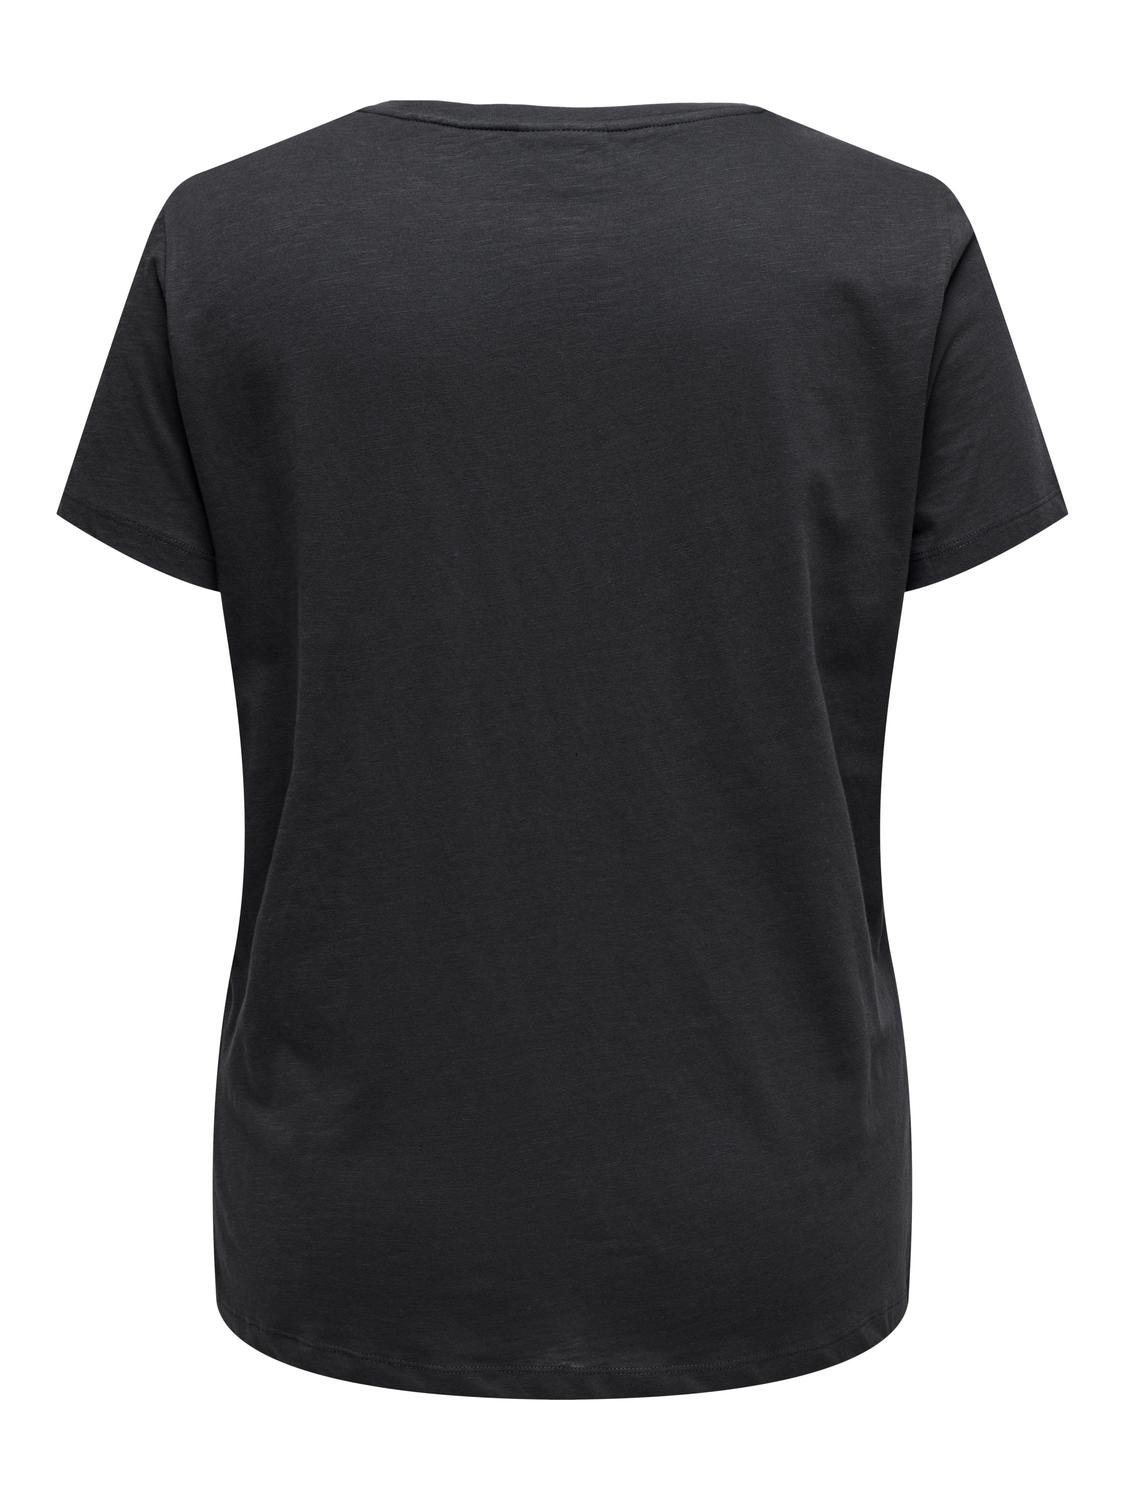 ONLY Curvy o-neck t-shirt -Phantom - 15315311